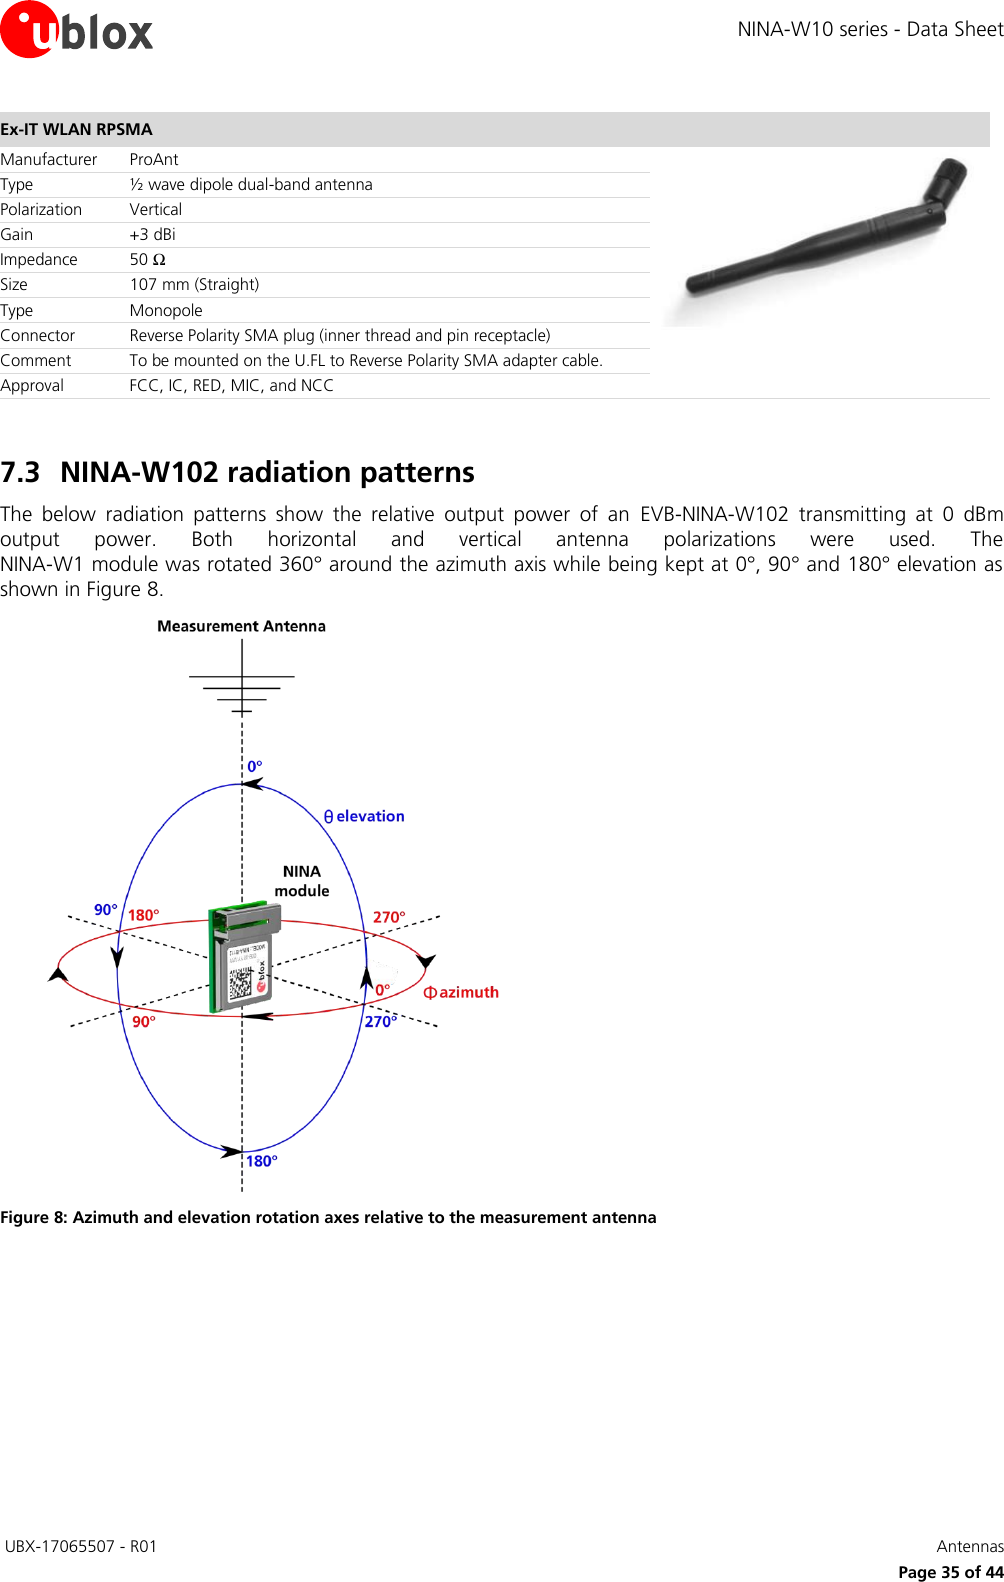 Page 35 of u blox NINAW10 Wireless Communication System Module User Manual NINA W10 series